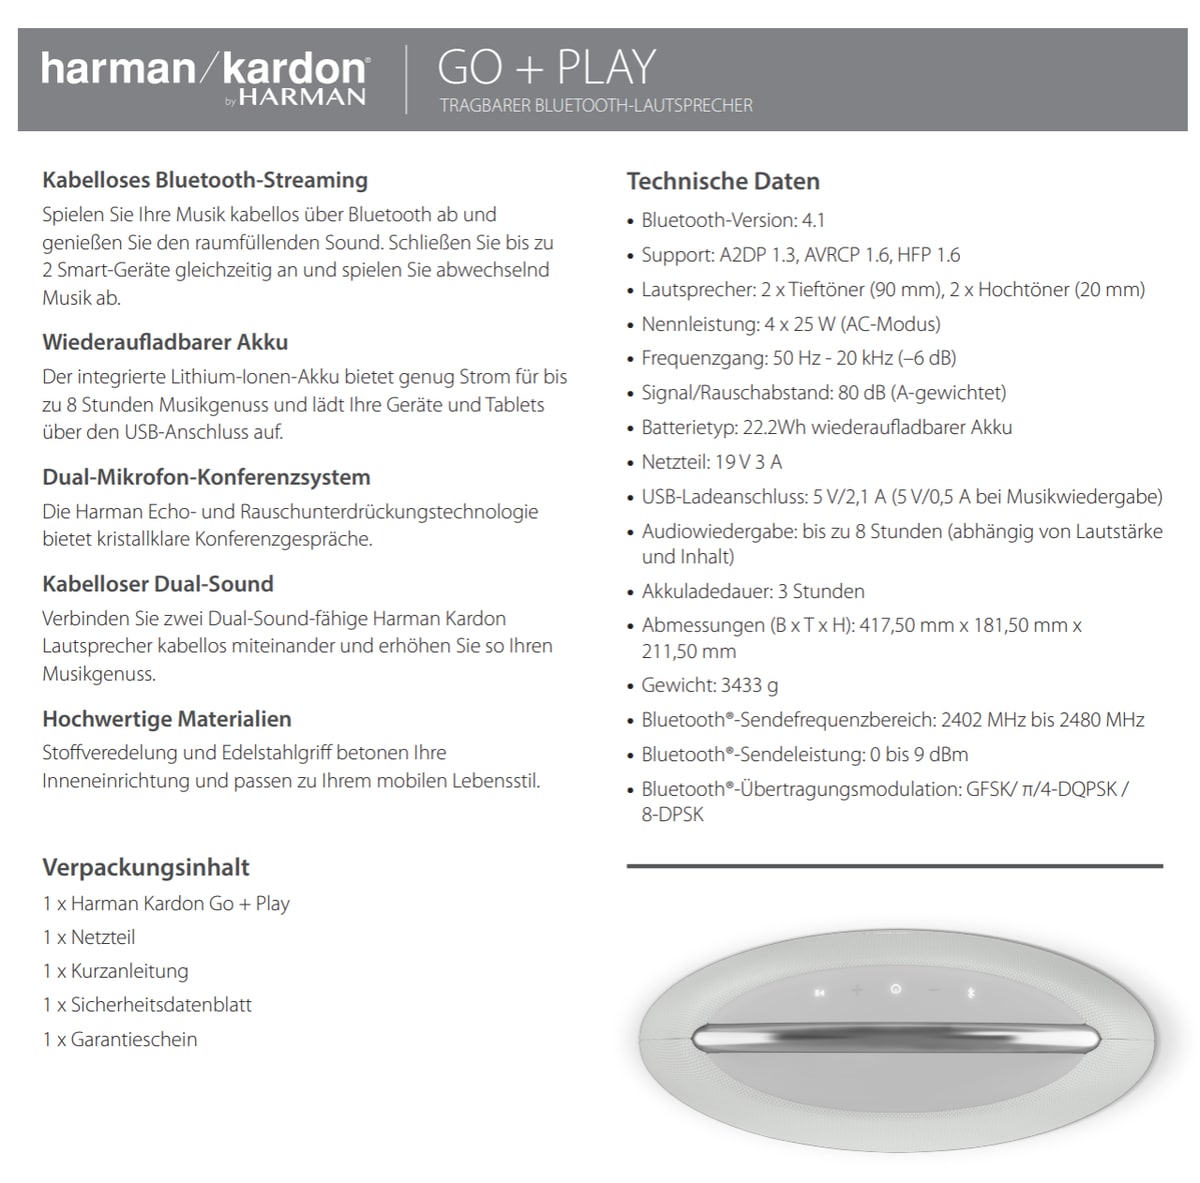 vorgestellt Harman Bluetooth-Lautsprecher Kardon: Drei neue